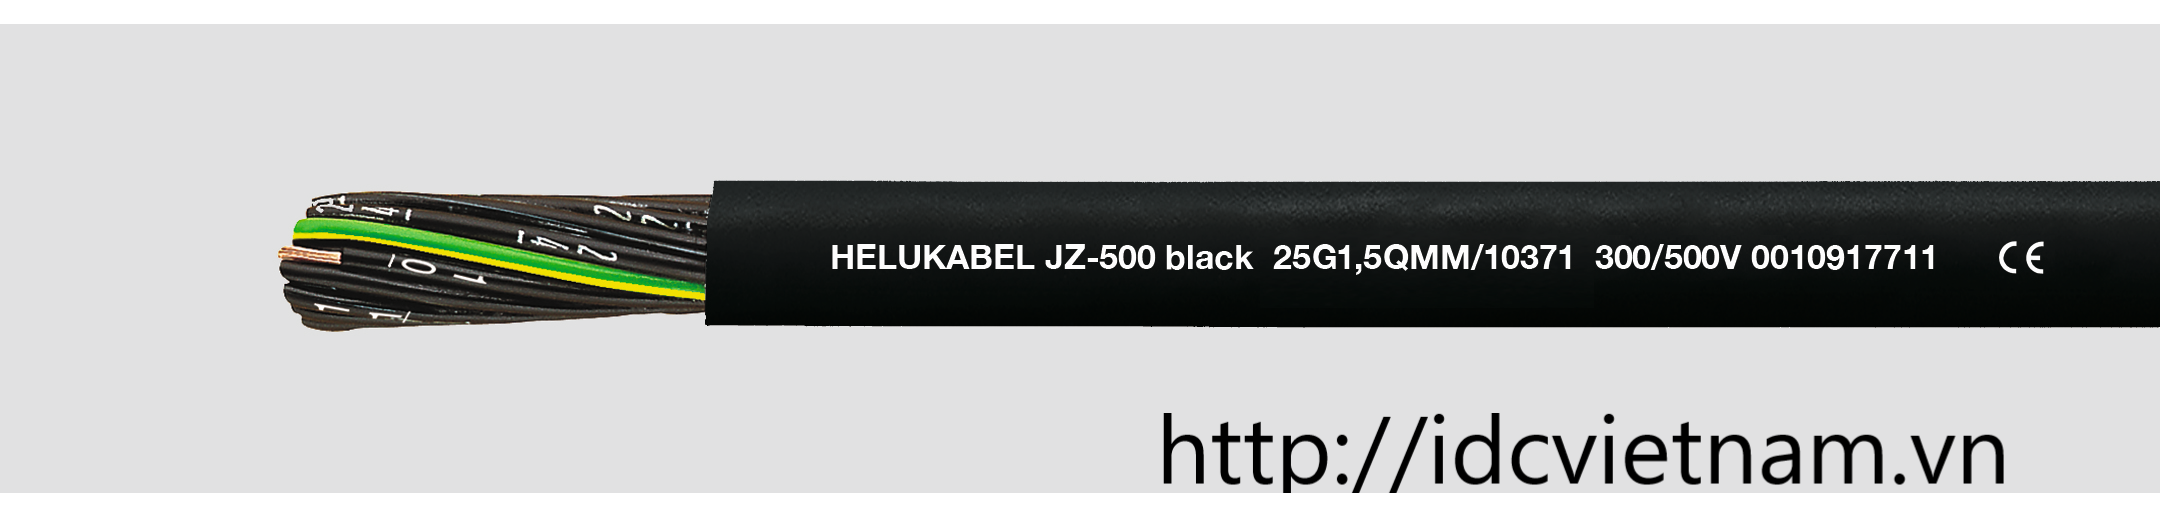 Helukabel JZ500 black 5G1mm2 BK (10359)